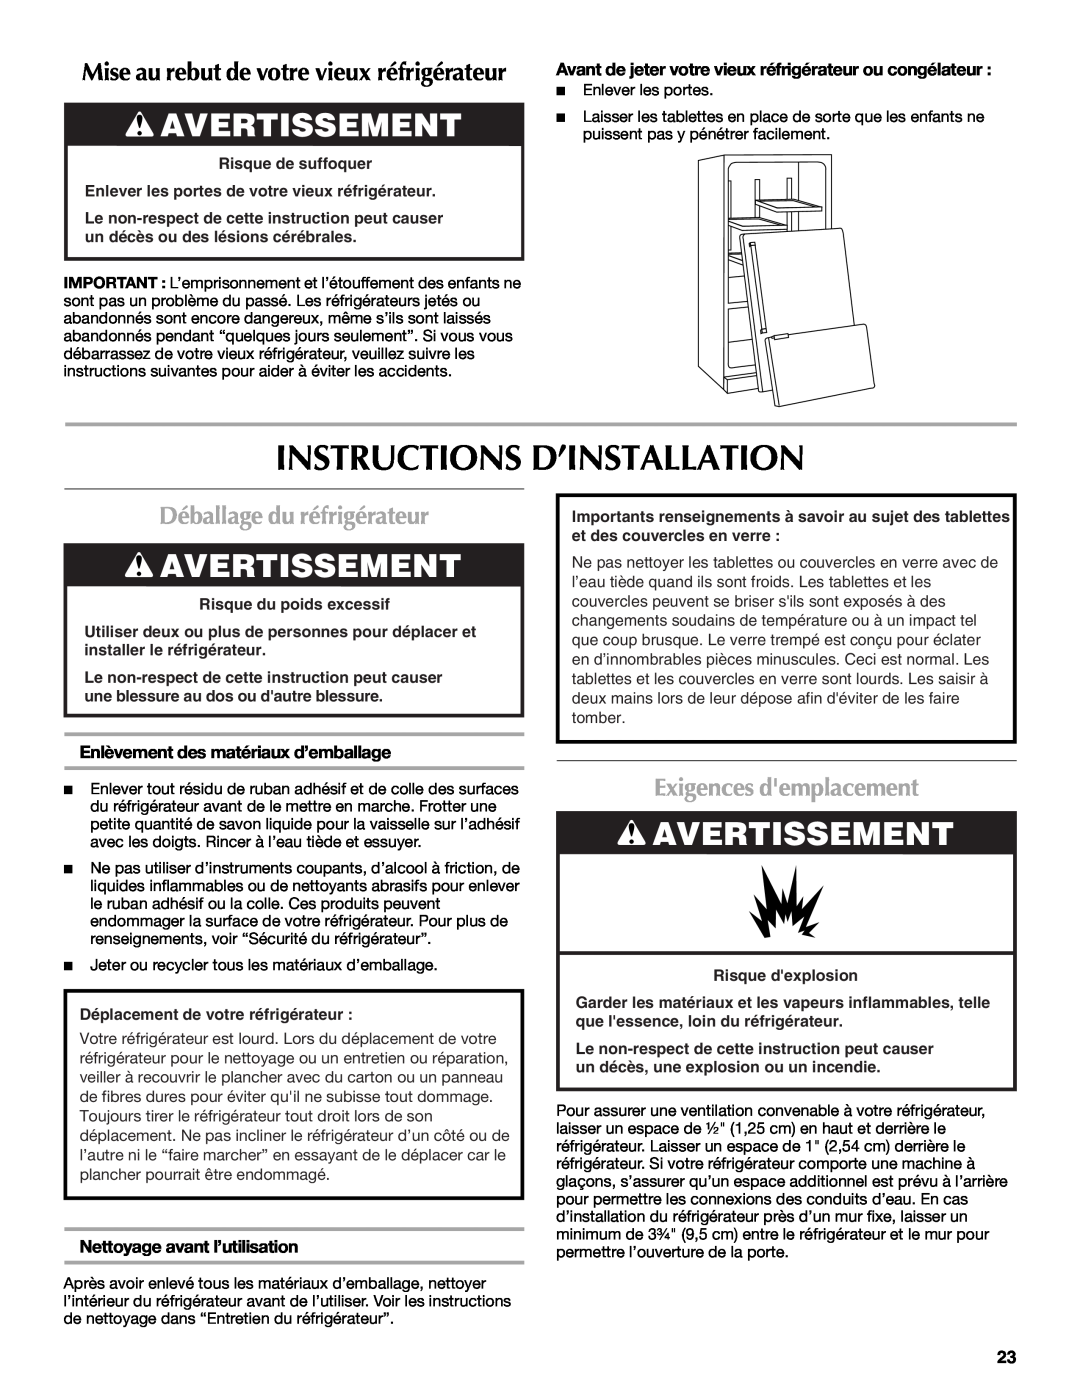 Maytag W10294936A Instructions D’Installation, Avertissement, Déballage du réfrigérateur, Exigences demplacement 